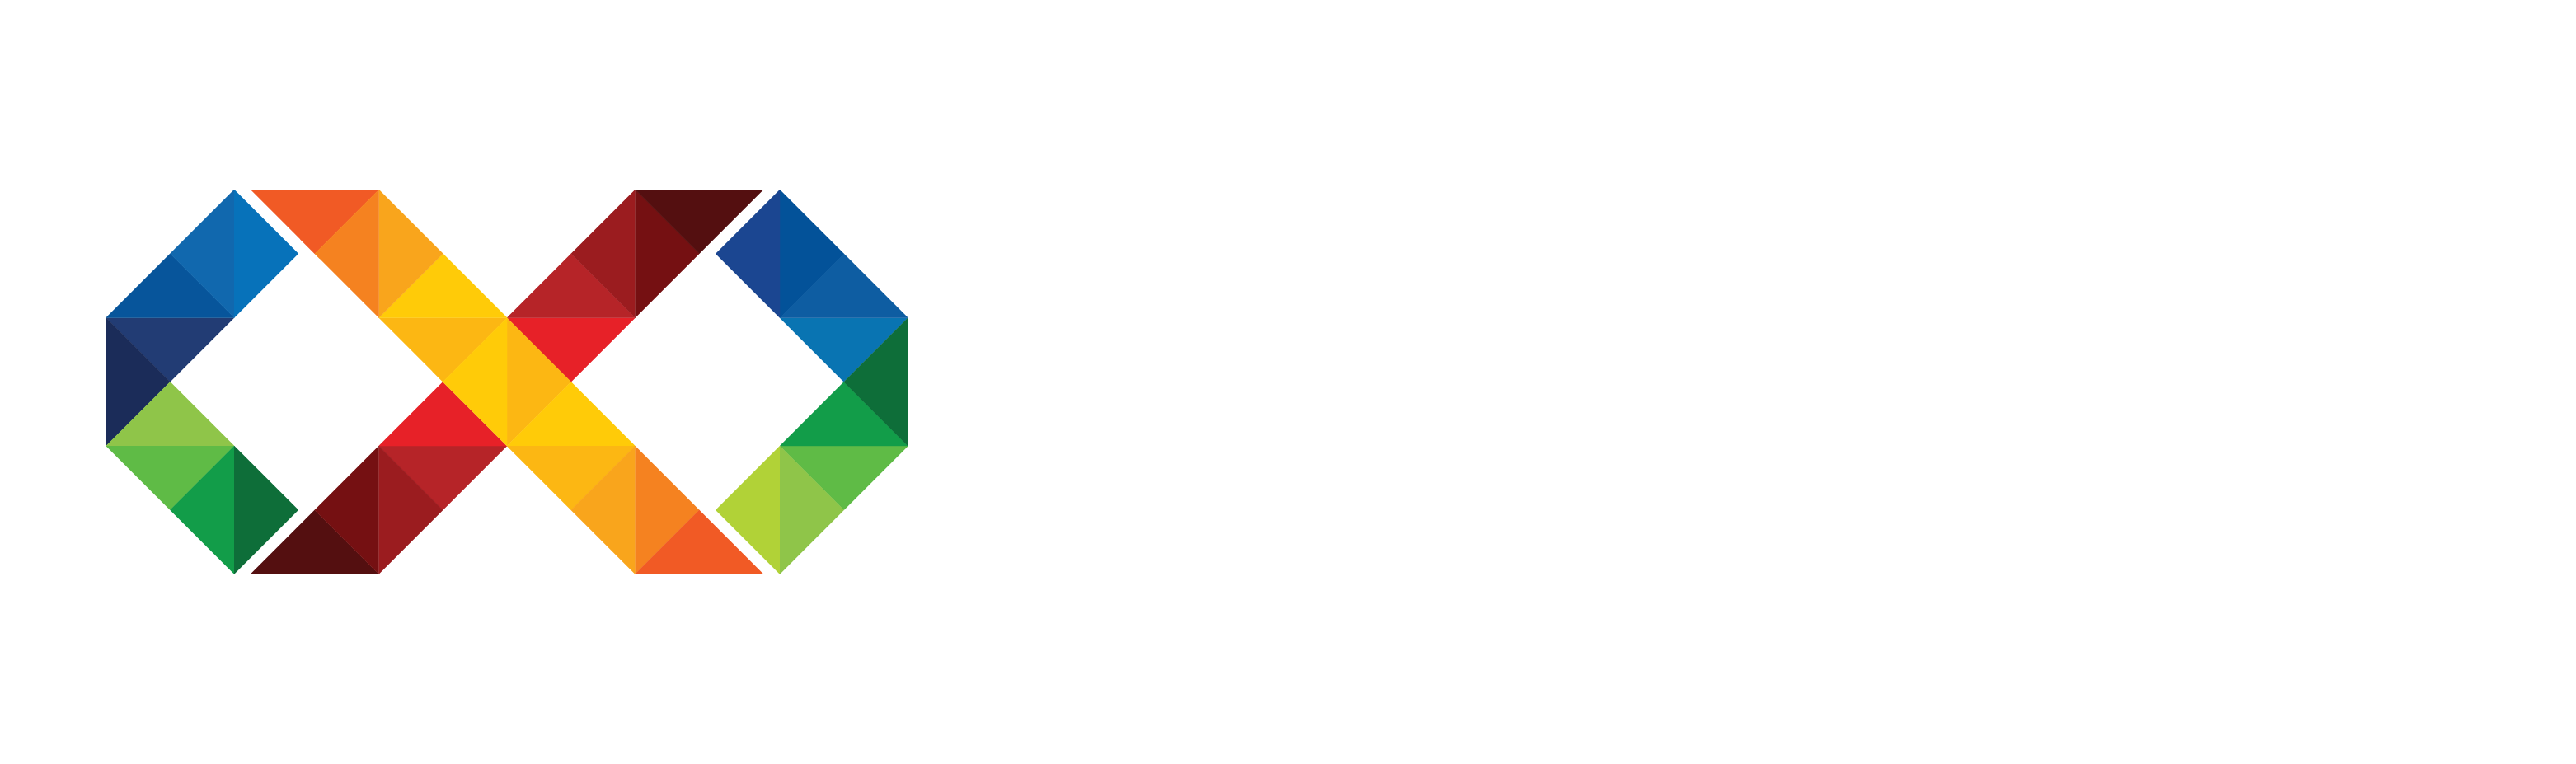 Hyblaweb